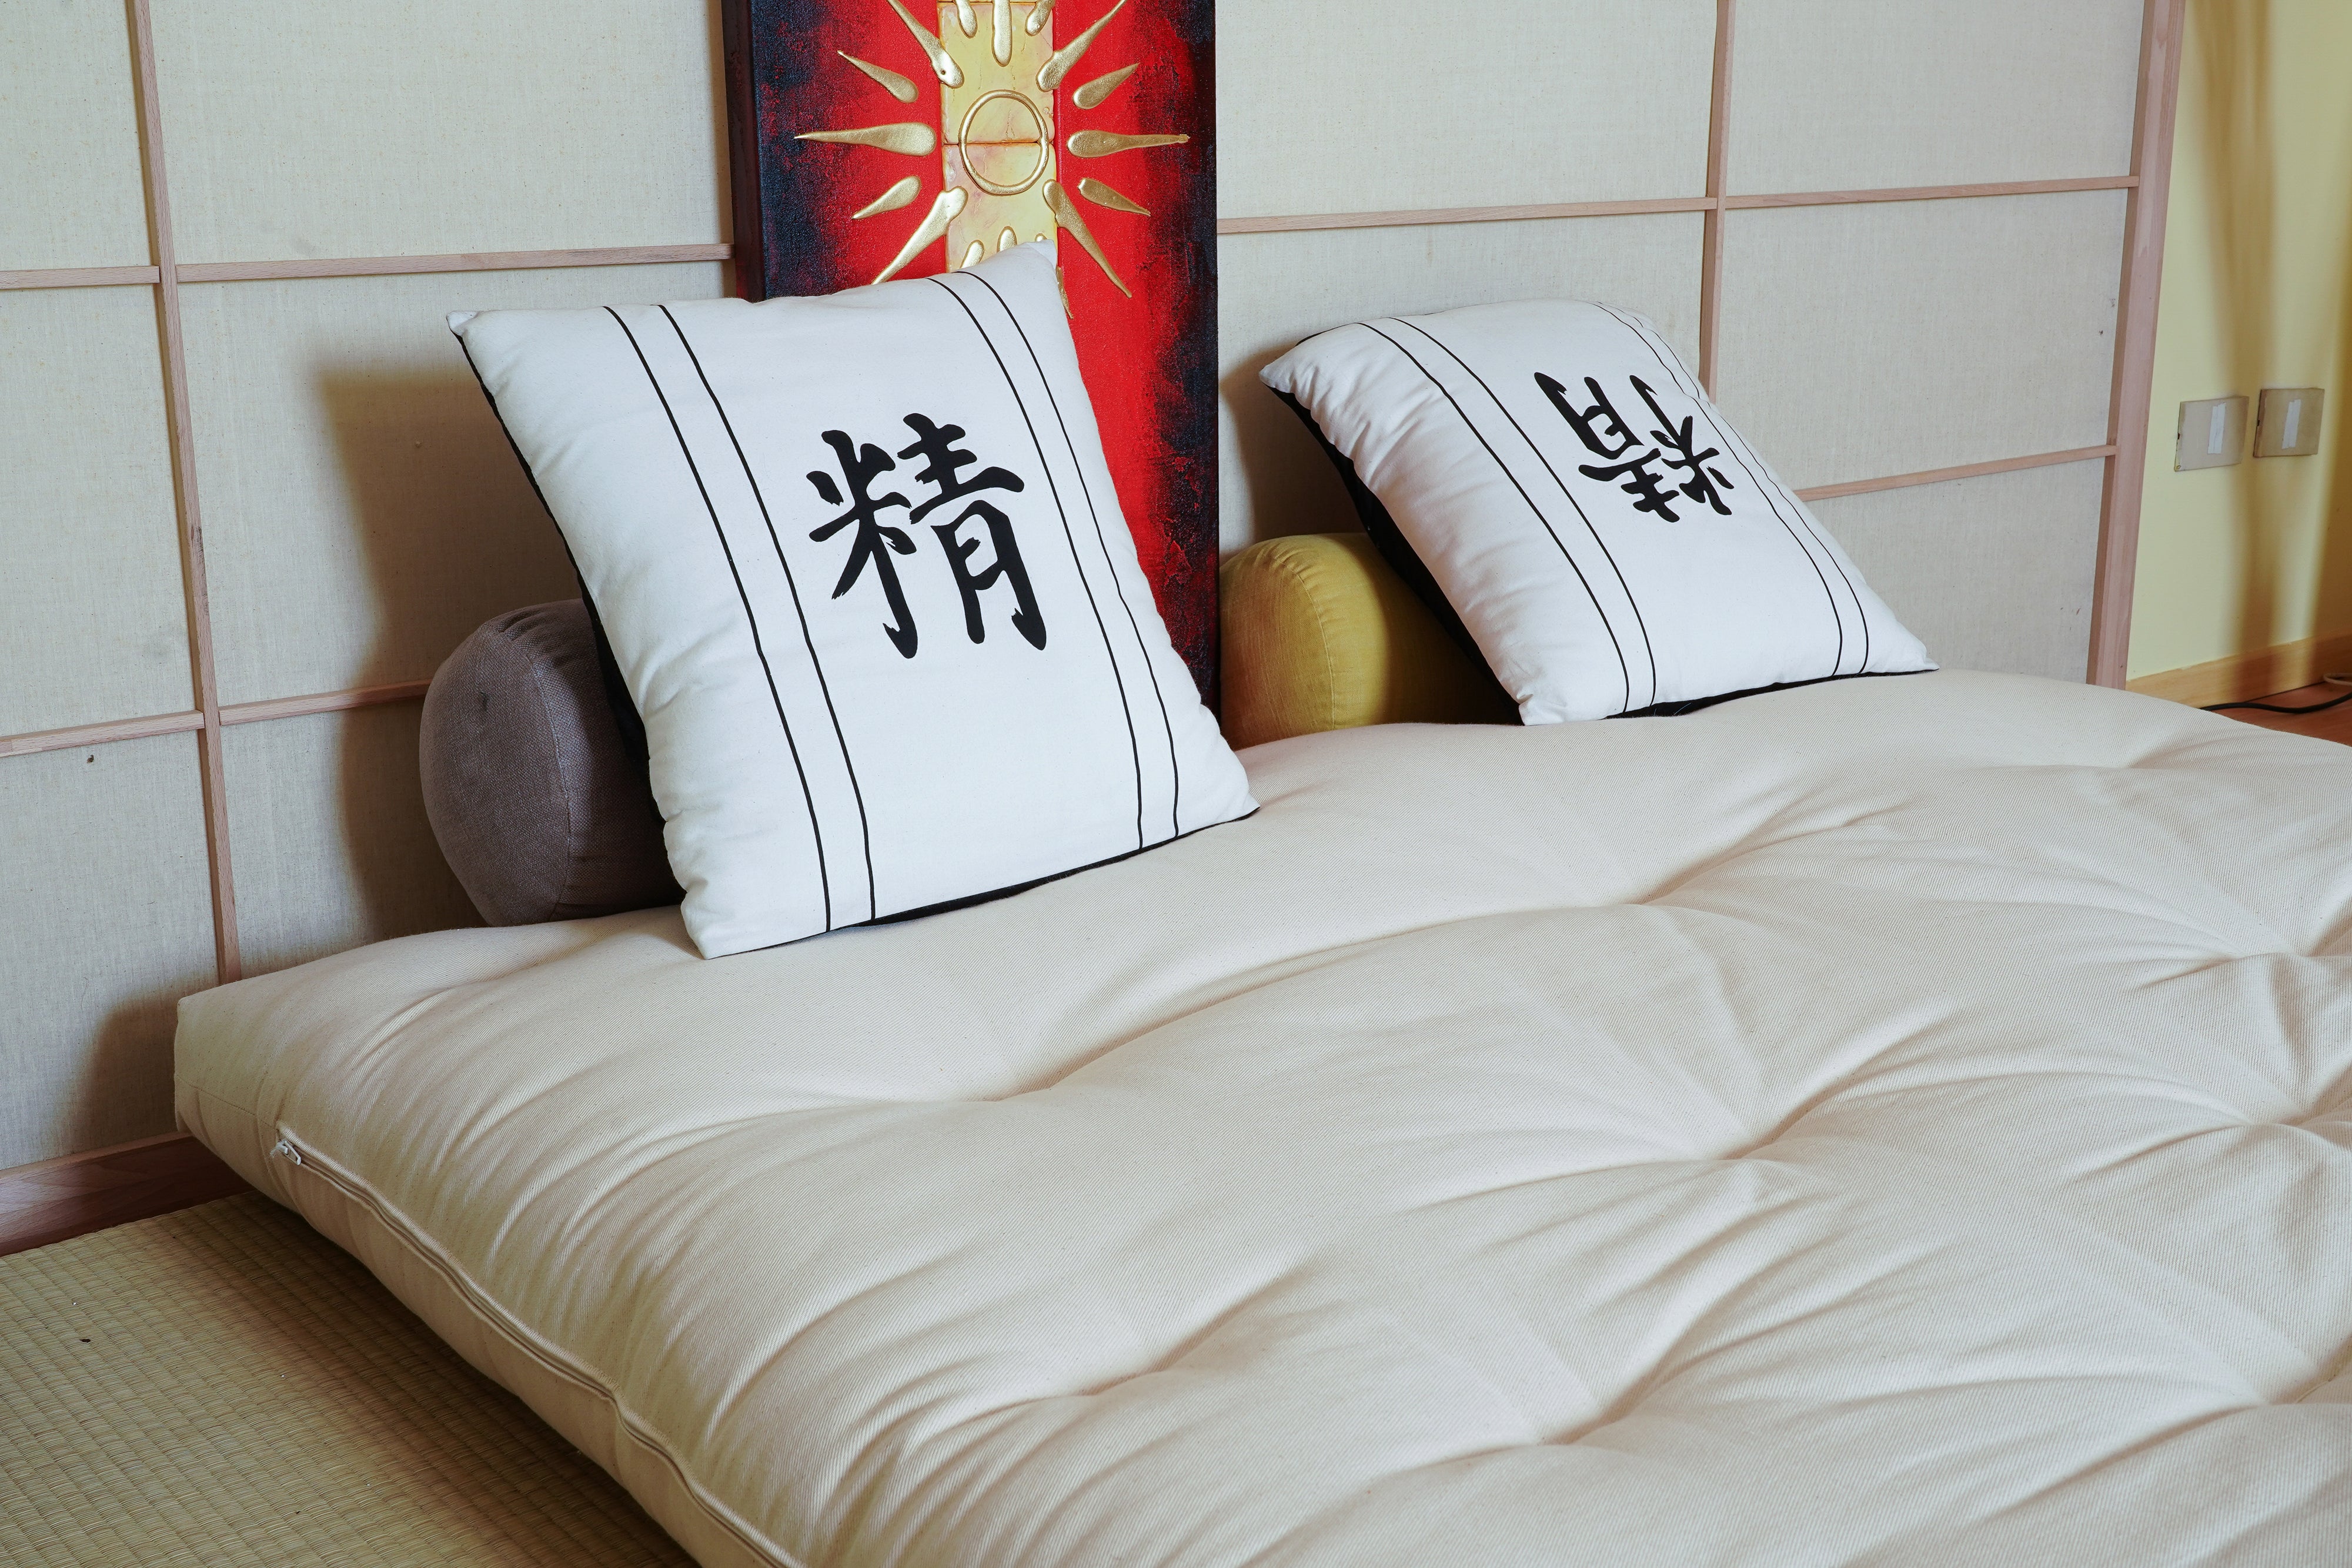 Divano futon tatami: arredare risparmiando - Vivere Zen